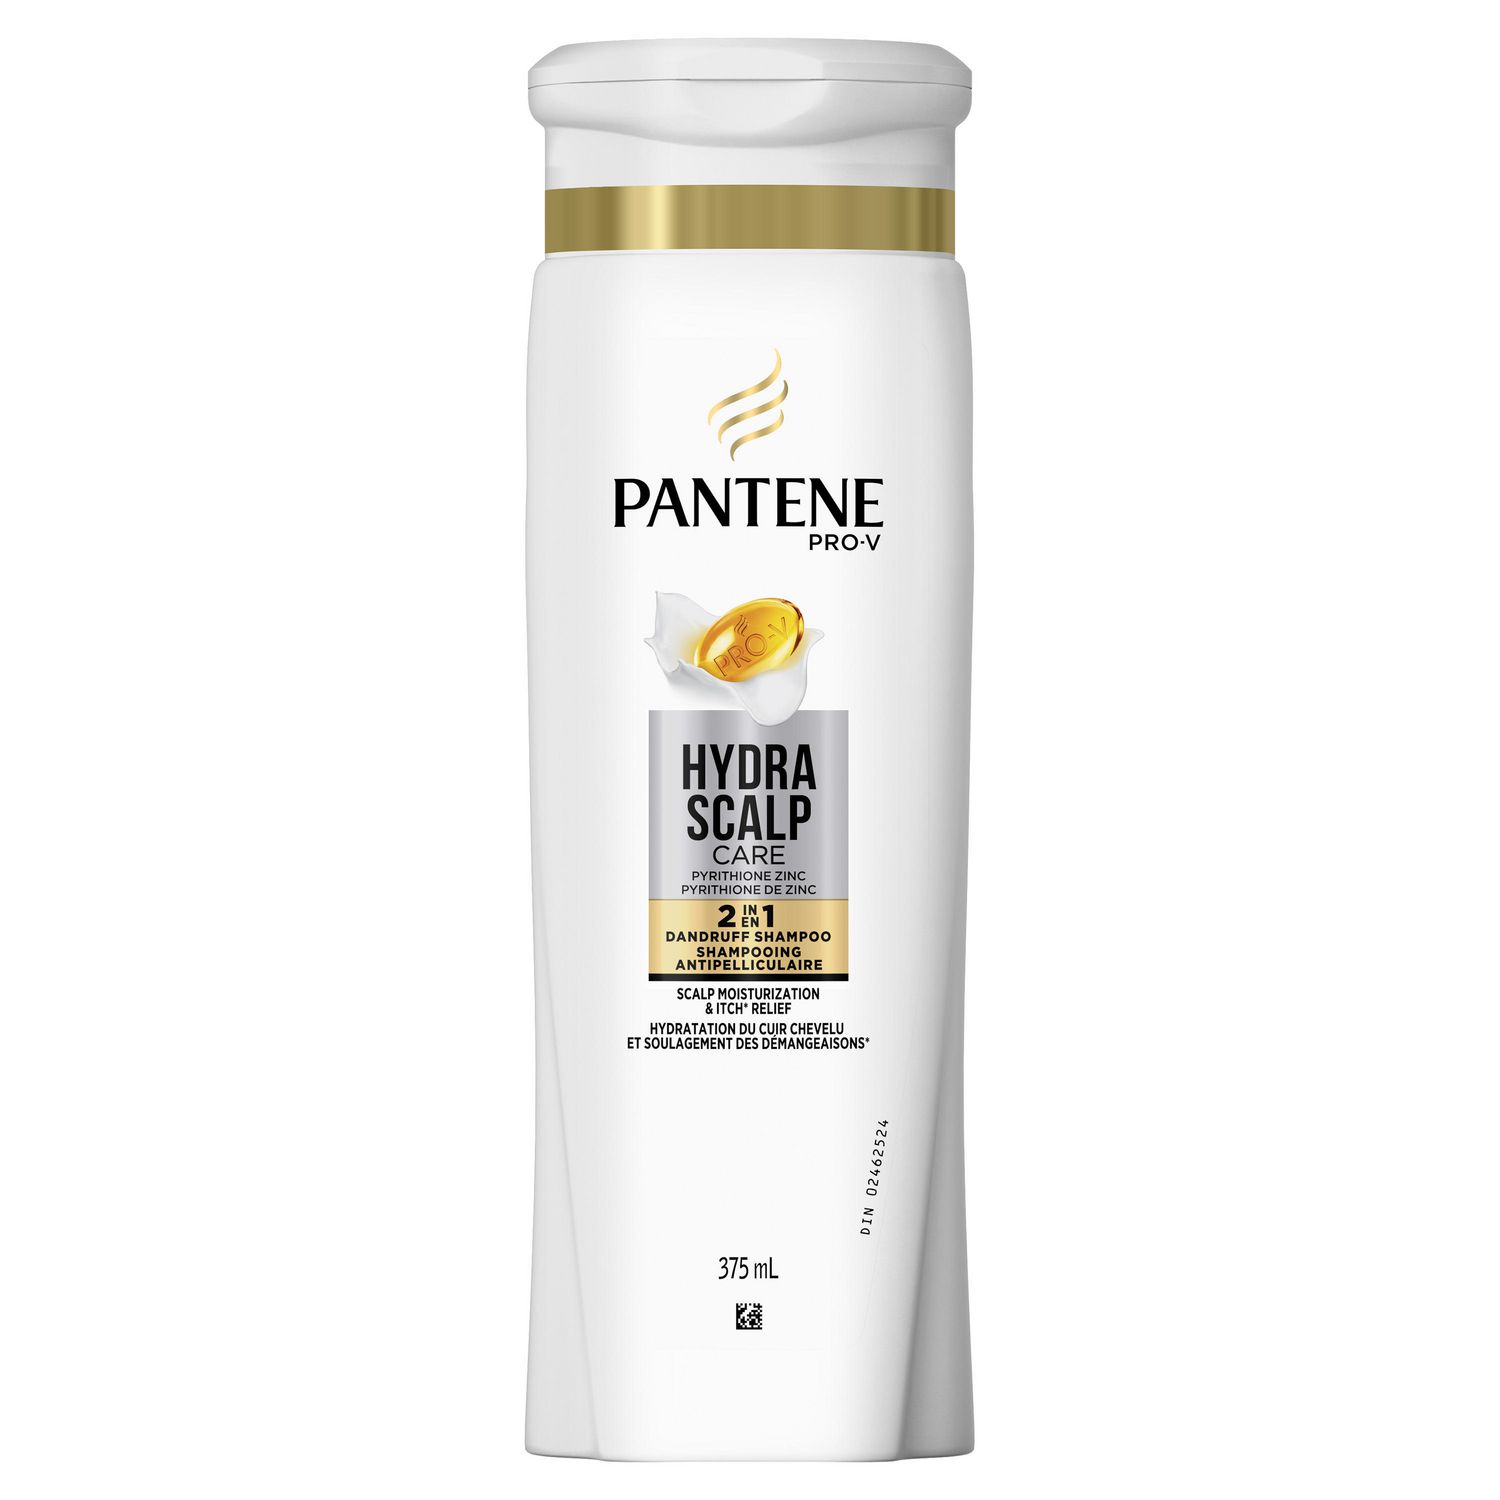 Pantene Pro-V Hydra Scalp Care 2in1 Dandruff Shampoo & Conditioner 